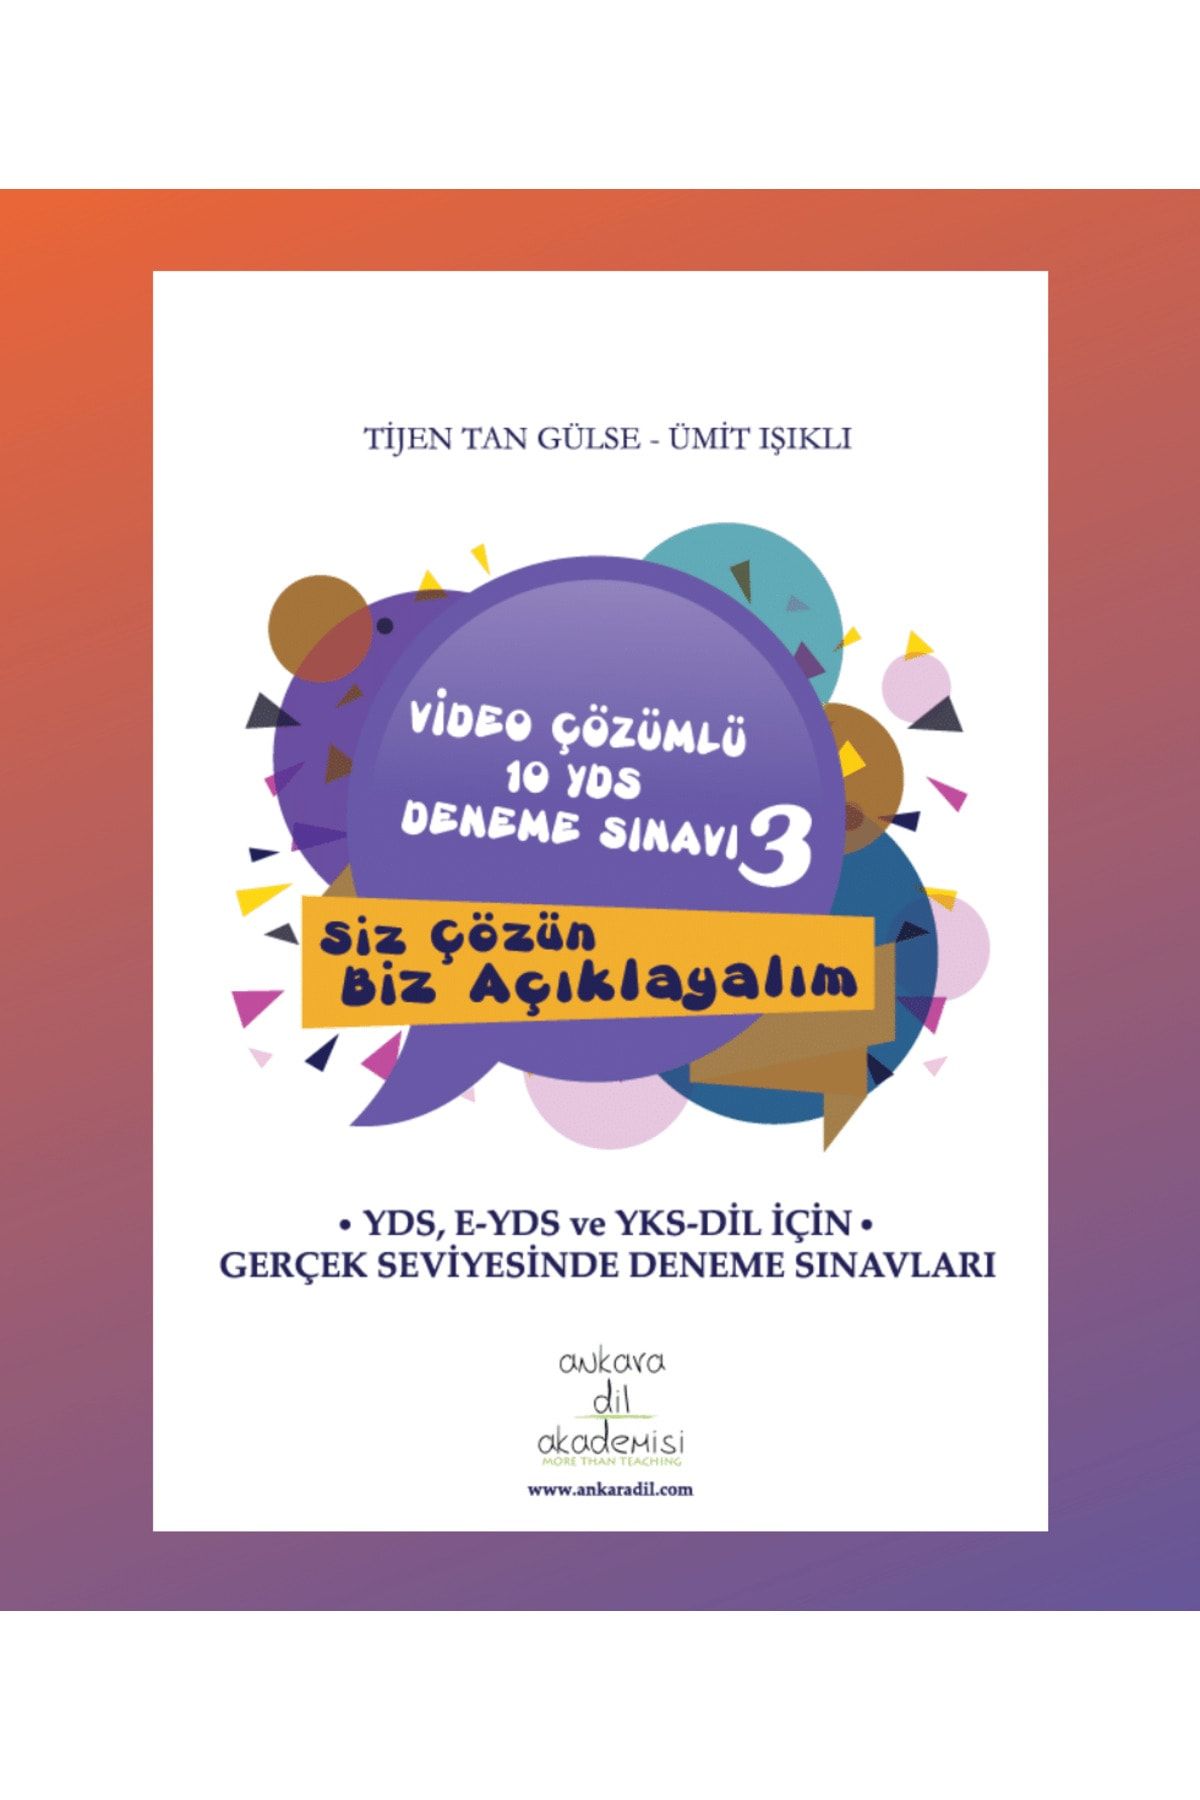 Ankara Dil Akademisi Video Çözümlü 10 Yds Deneme Sınavı - 3